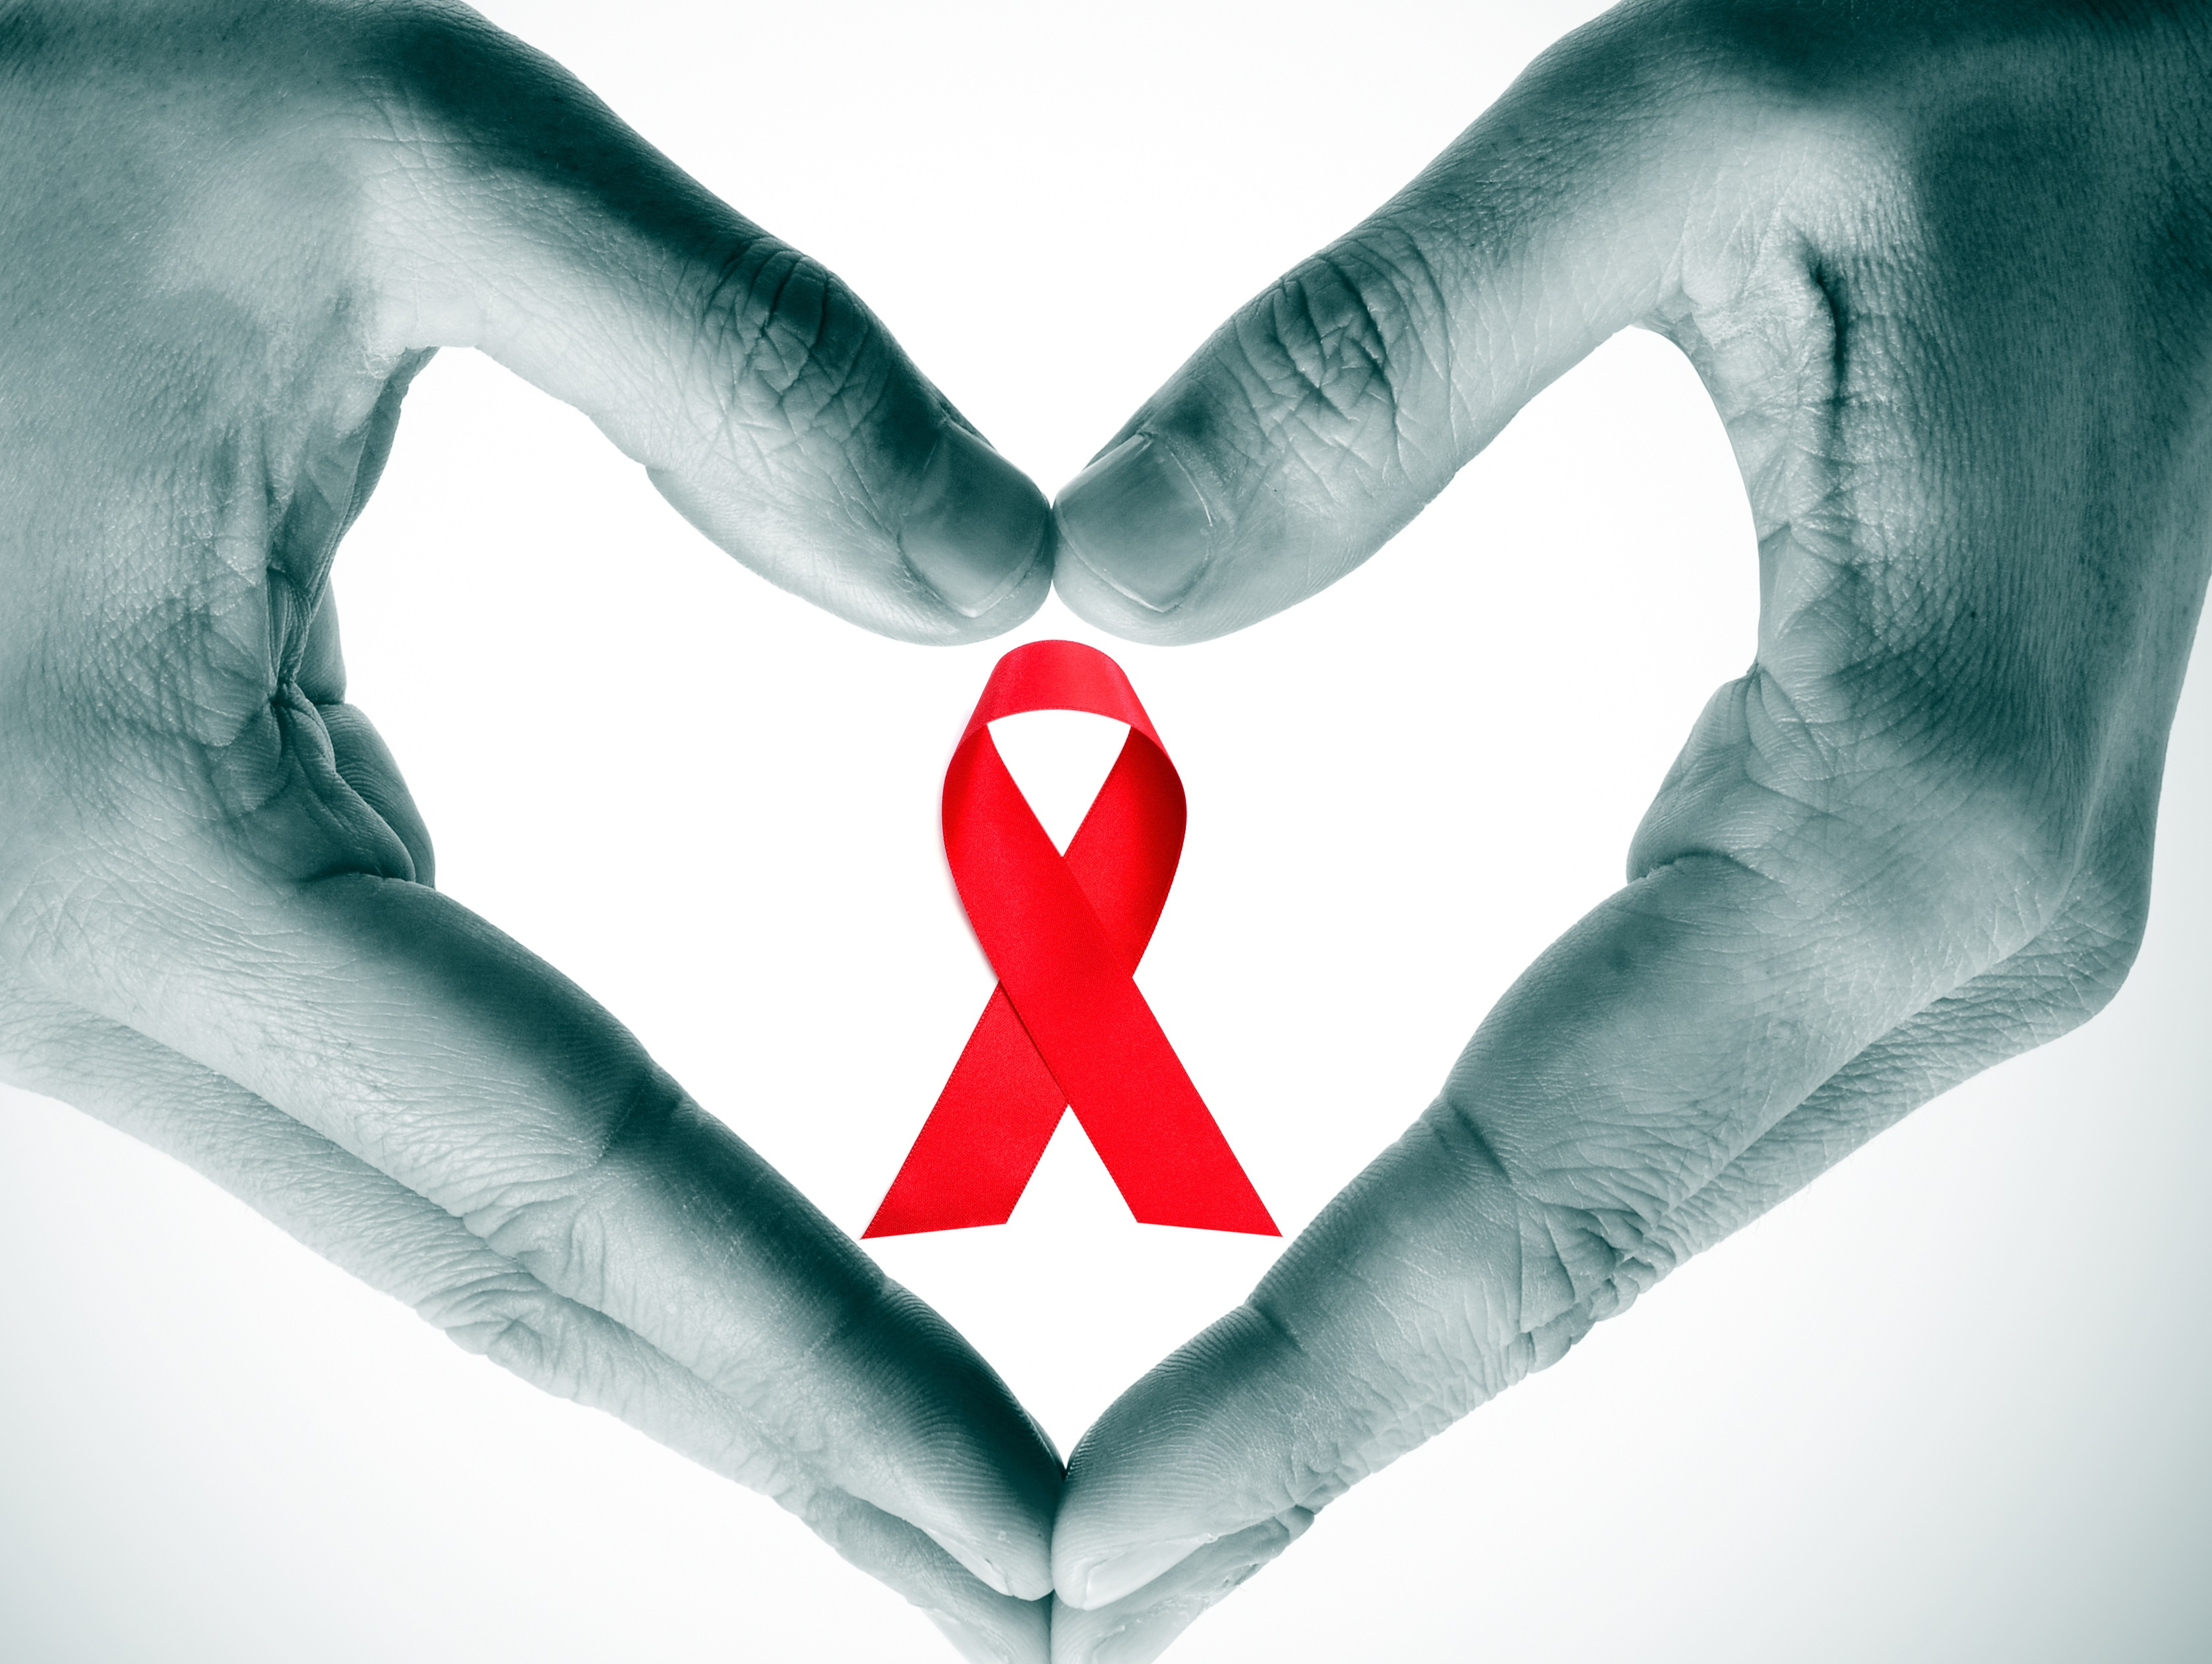 Акция КДЛ«Биогенетика» — «Узнай свой статус на ВИЧ». В рамках акции можно сдать кровь и получить результат в день обращения со скидкой 20%